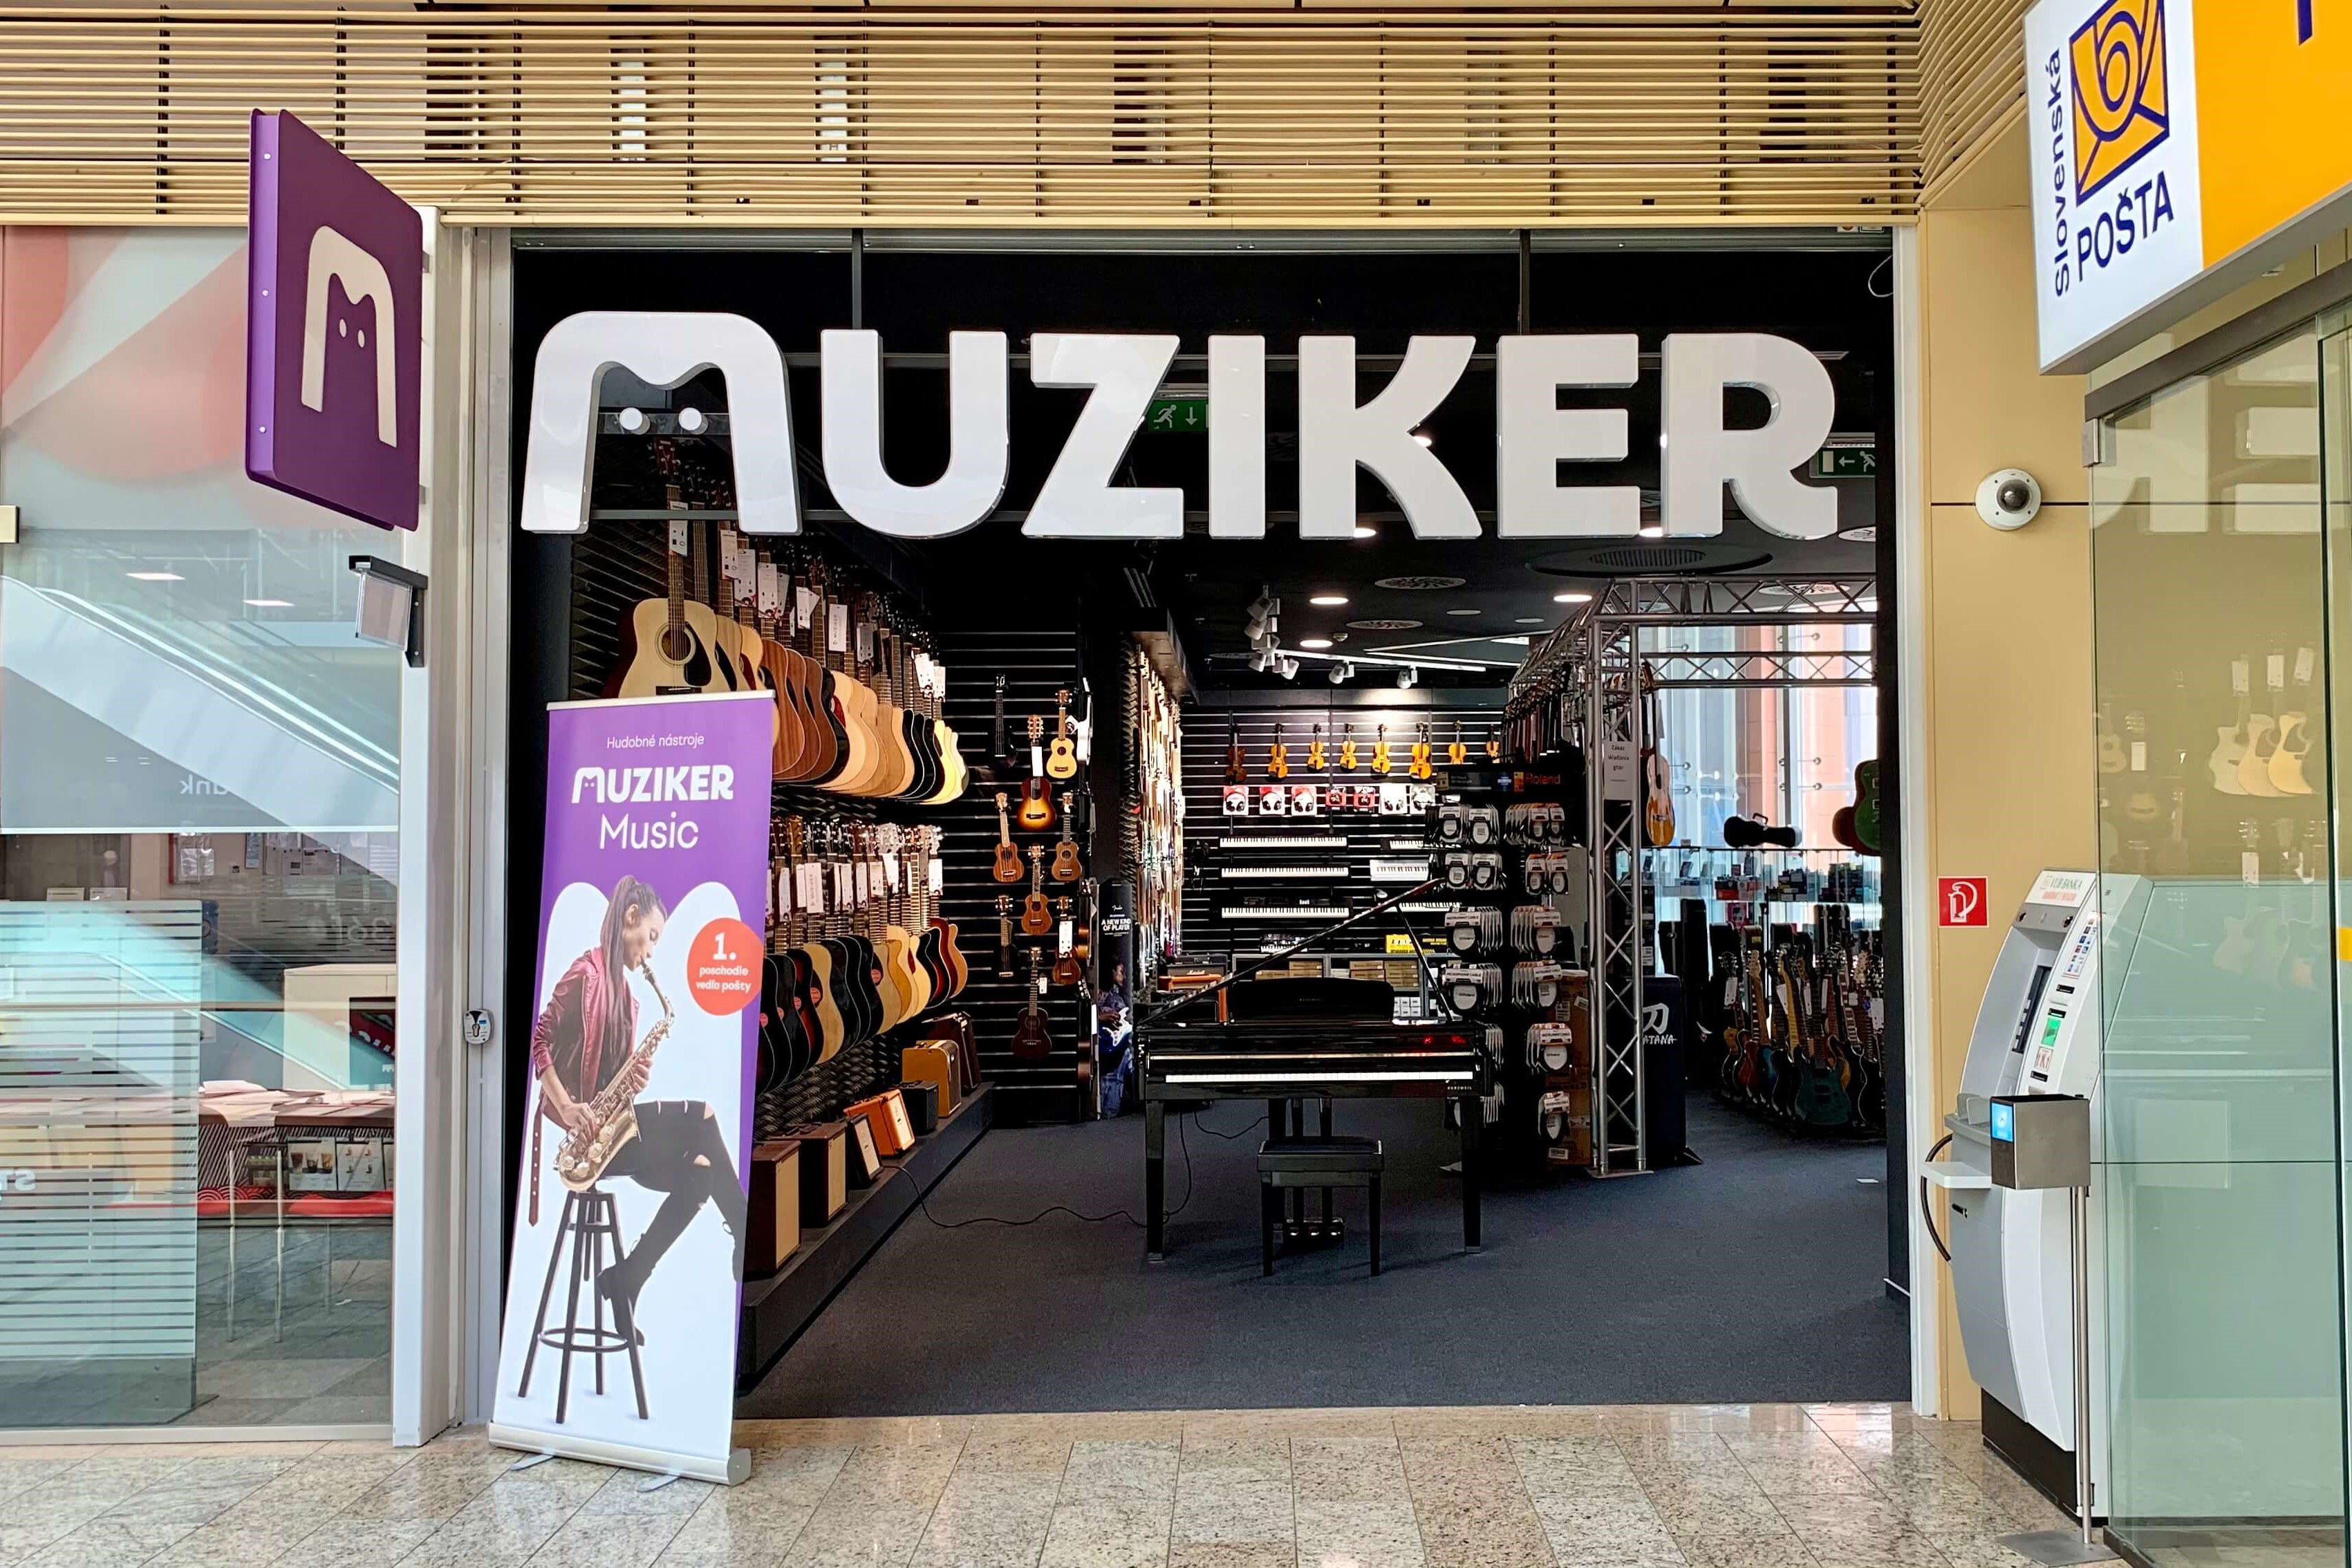 Glazbeni instrumenti i oprema u trgovini s glazbalima Muziker Žilina.